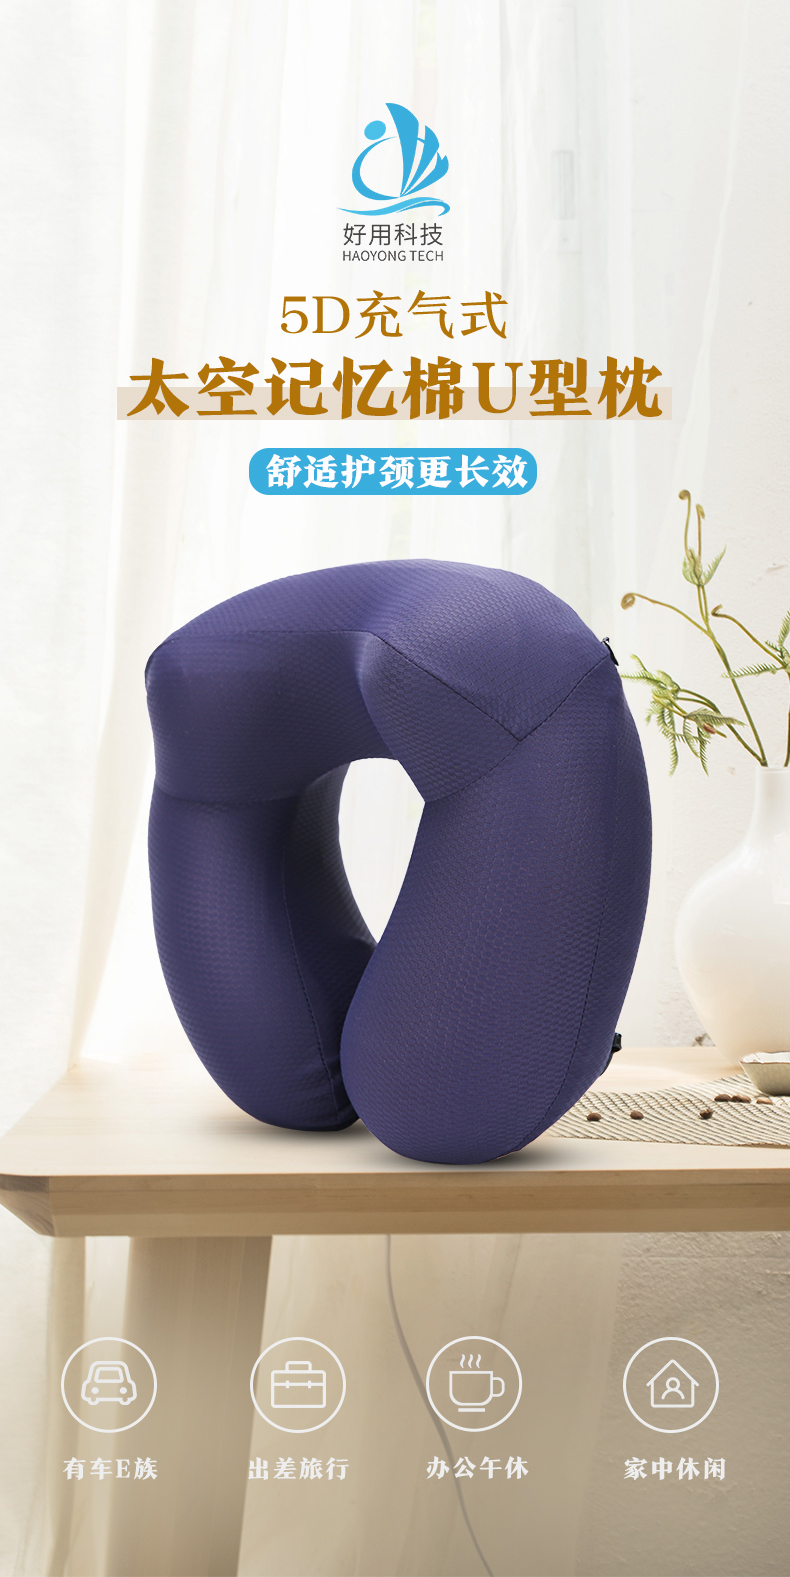 太空记忆棉充气枕哪家好_充气球相关-广州好用科技有限公司